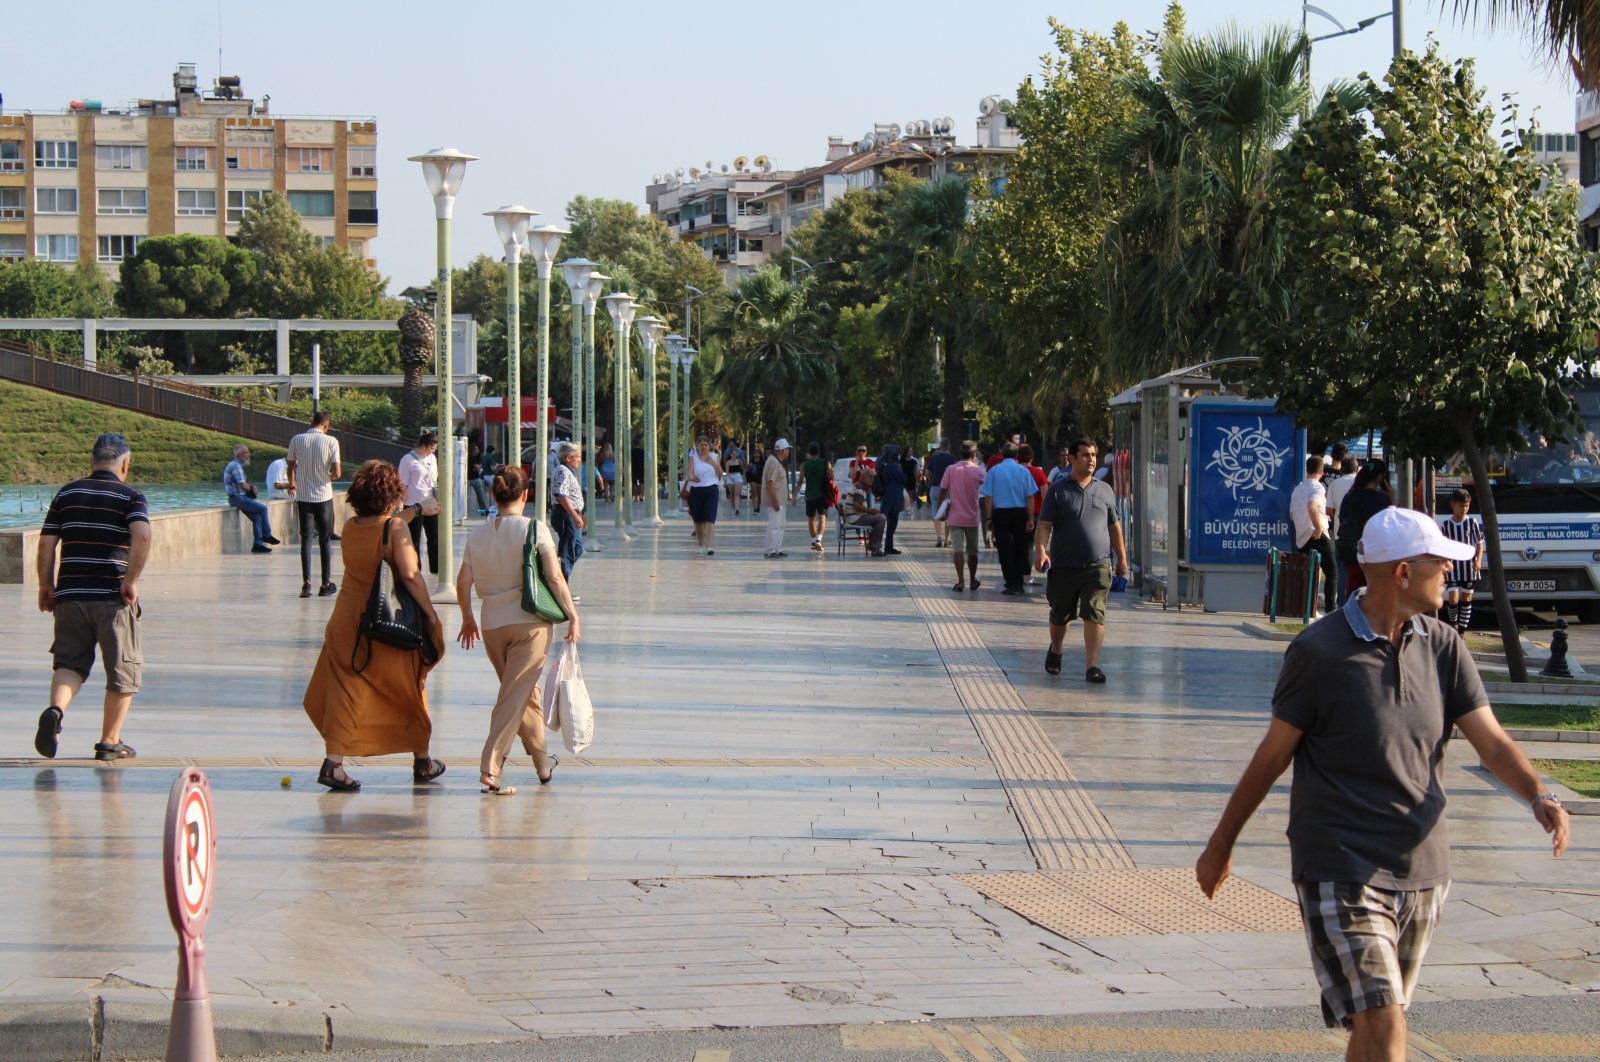 Survei menunjukkan orang-orang di wilayah Aegean paling bahagia di Türkiye